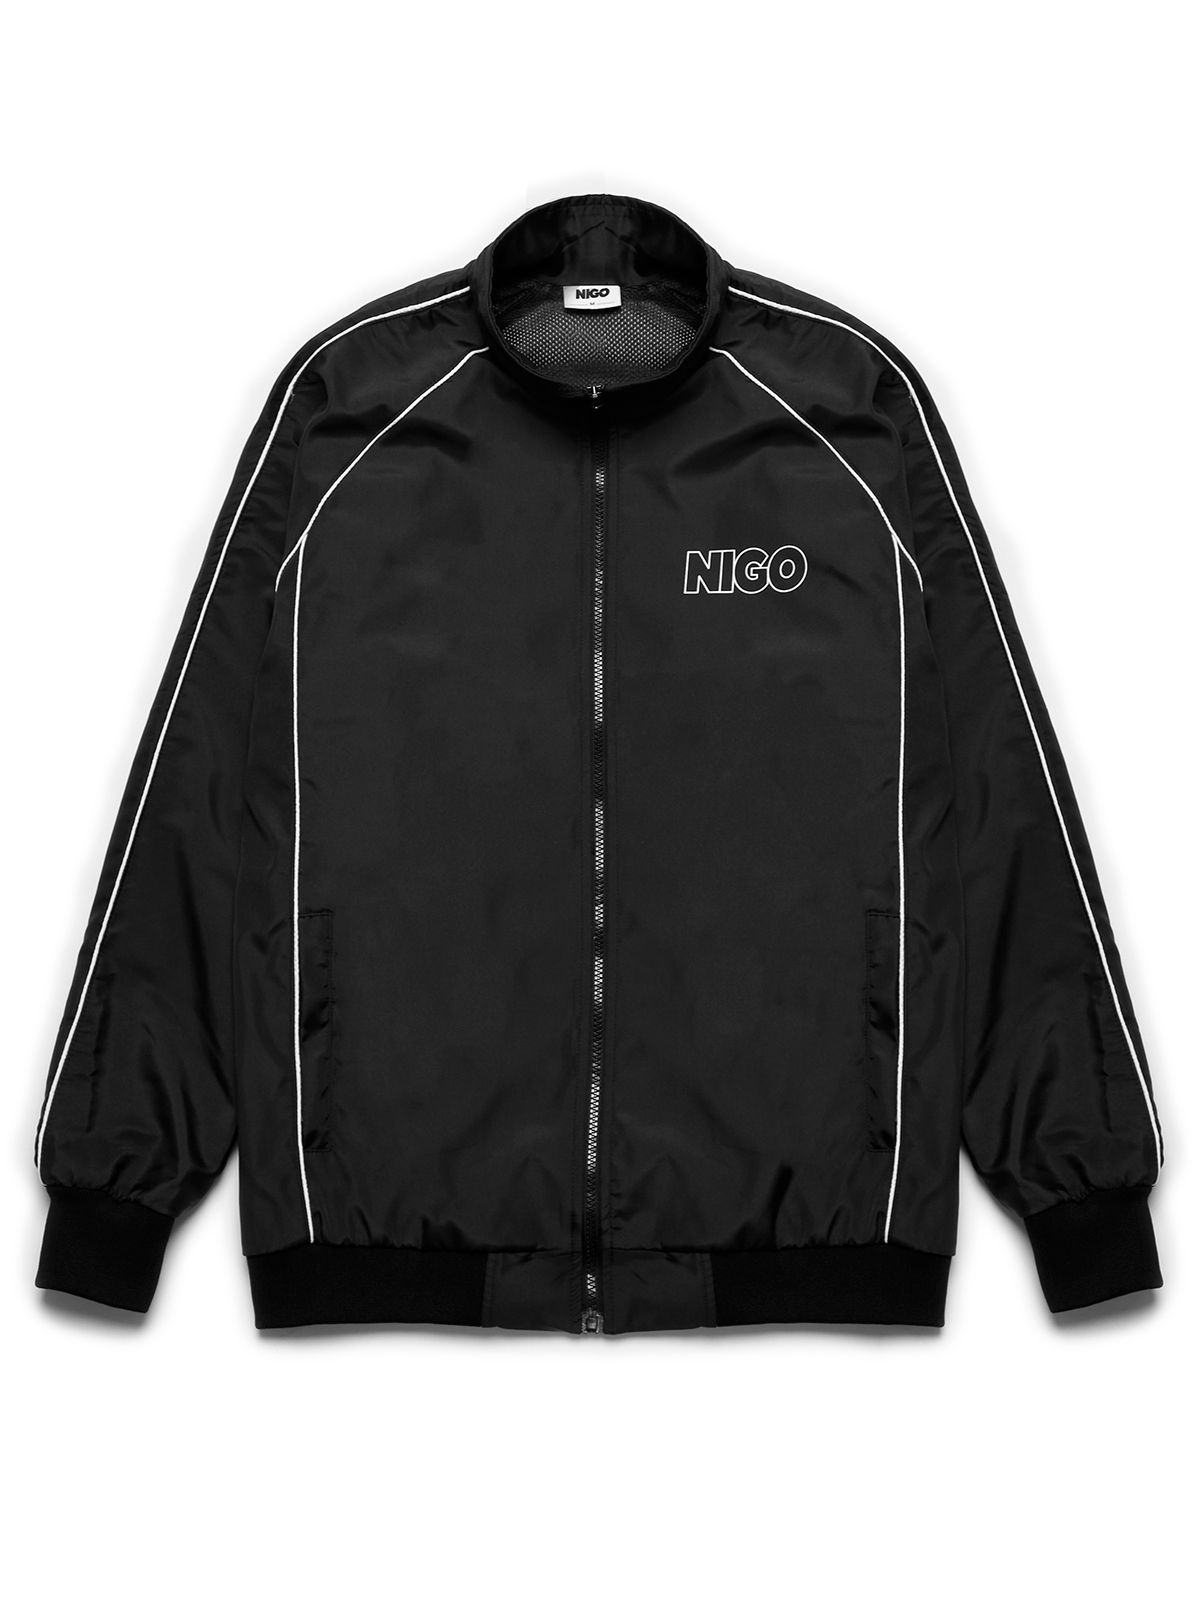  Áo khoác dù black trạck jacket 